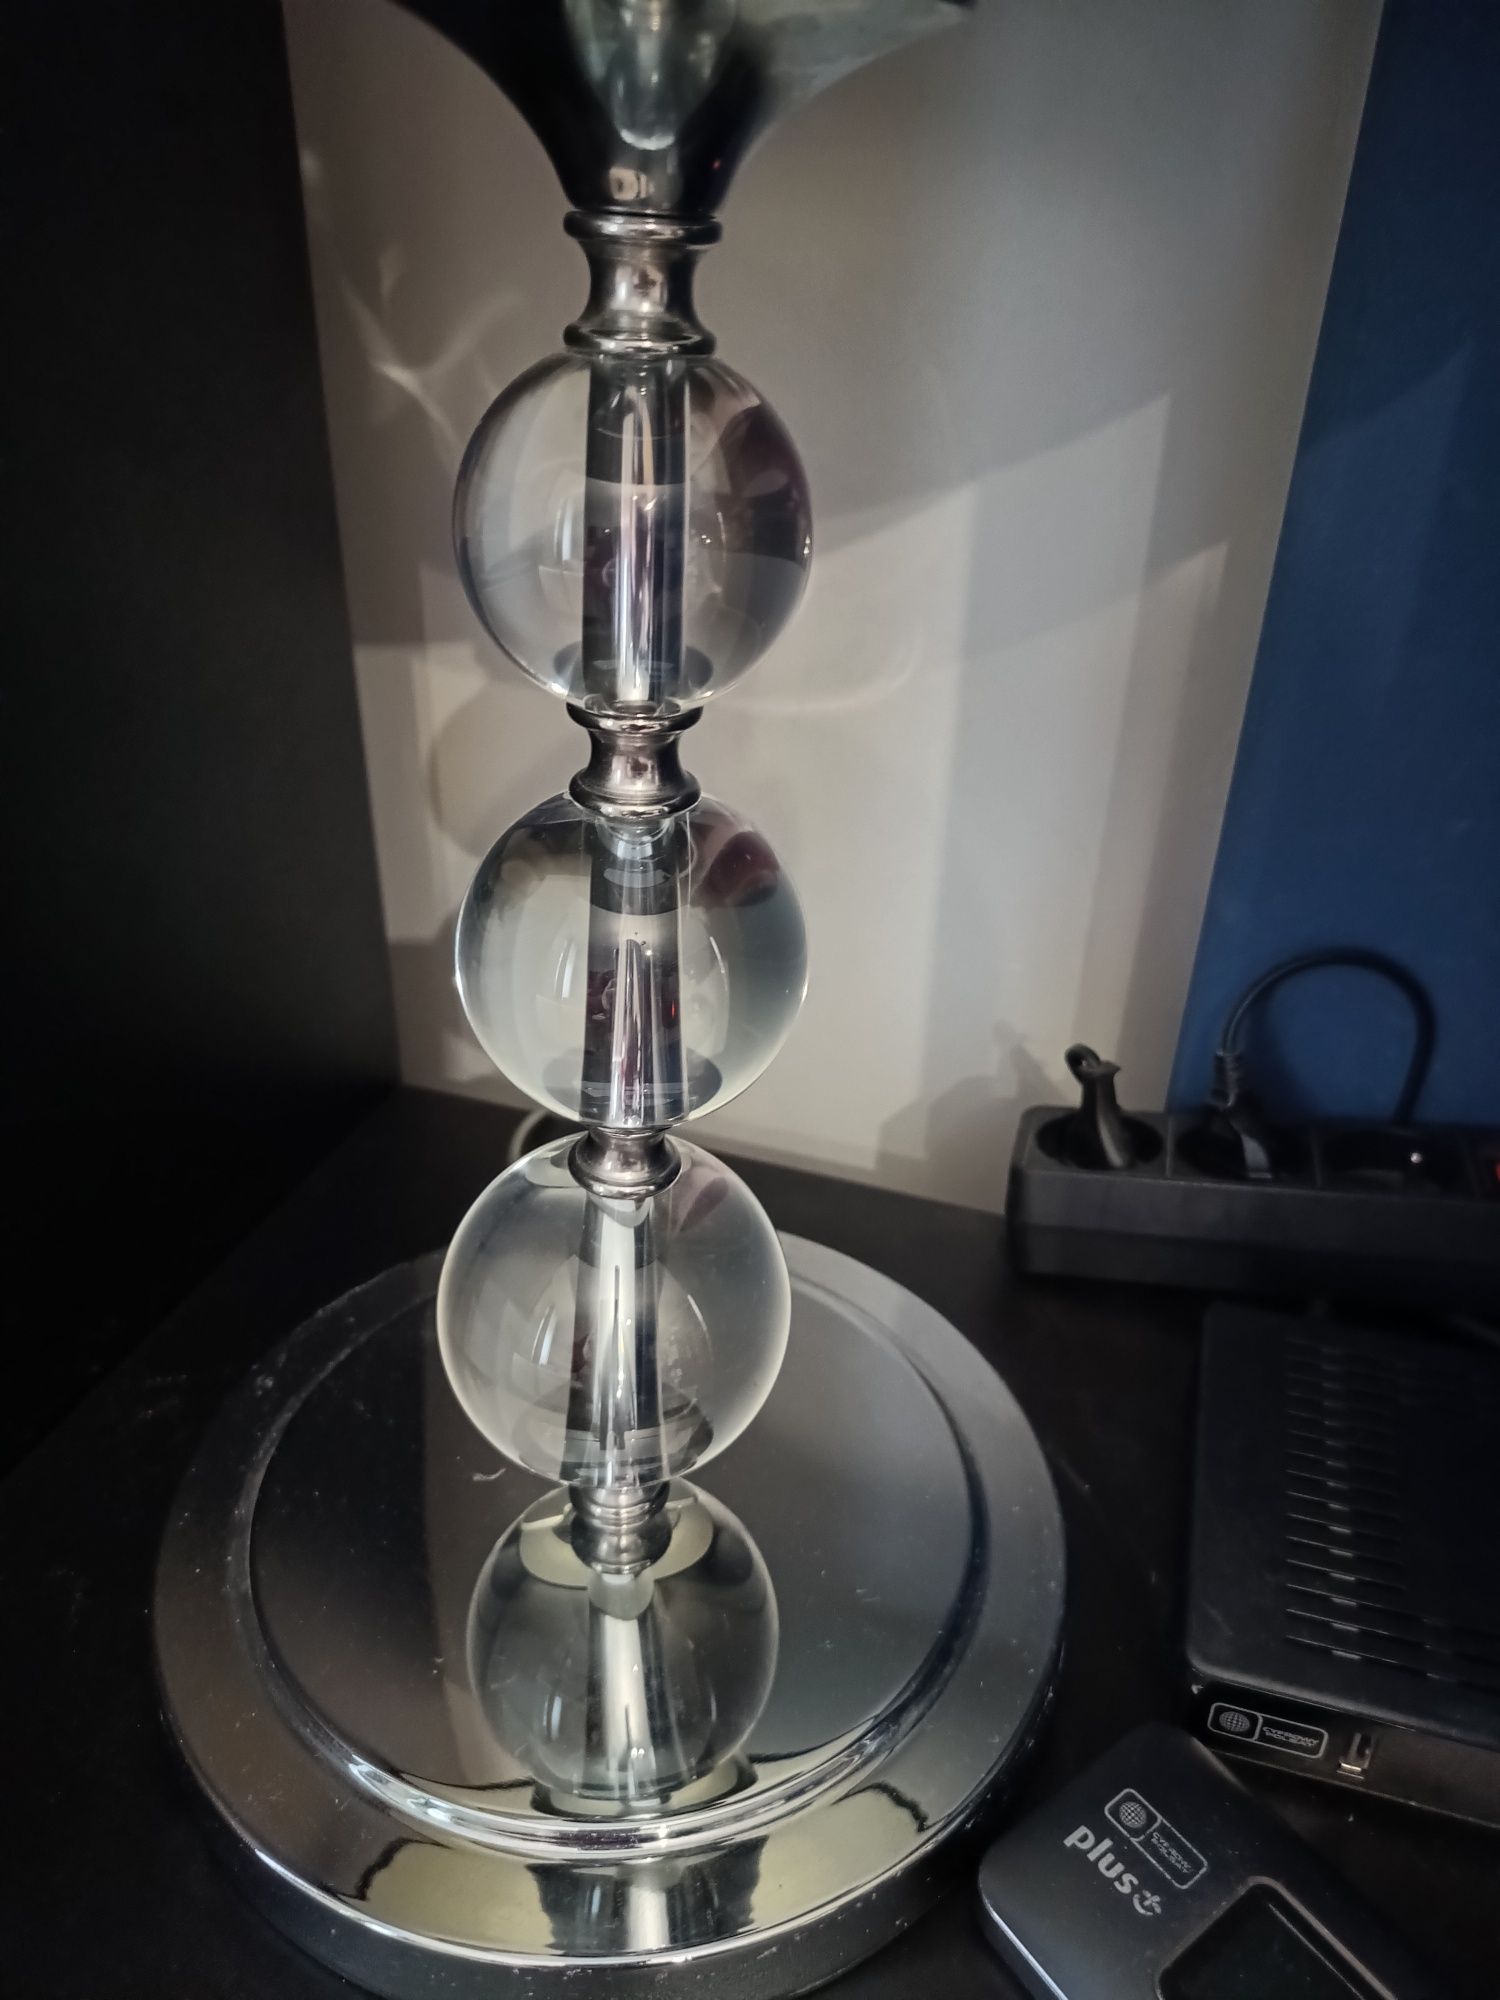 Piękna lampa w stanie idealnym kupiona w Agata meble